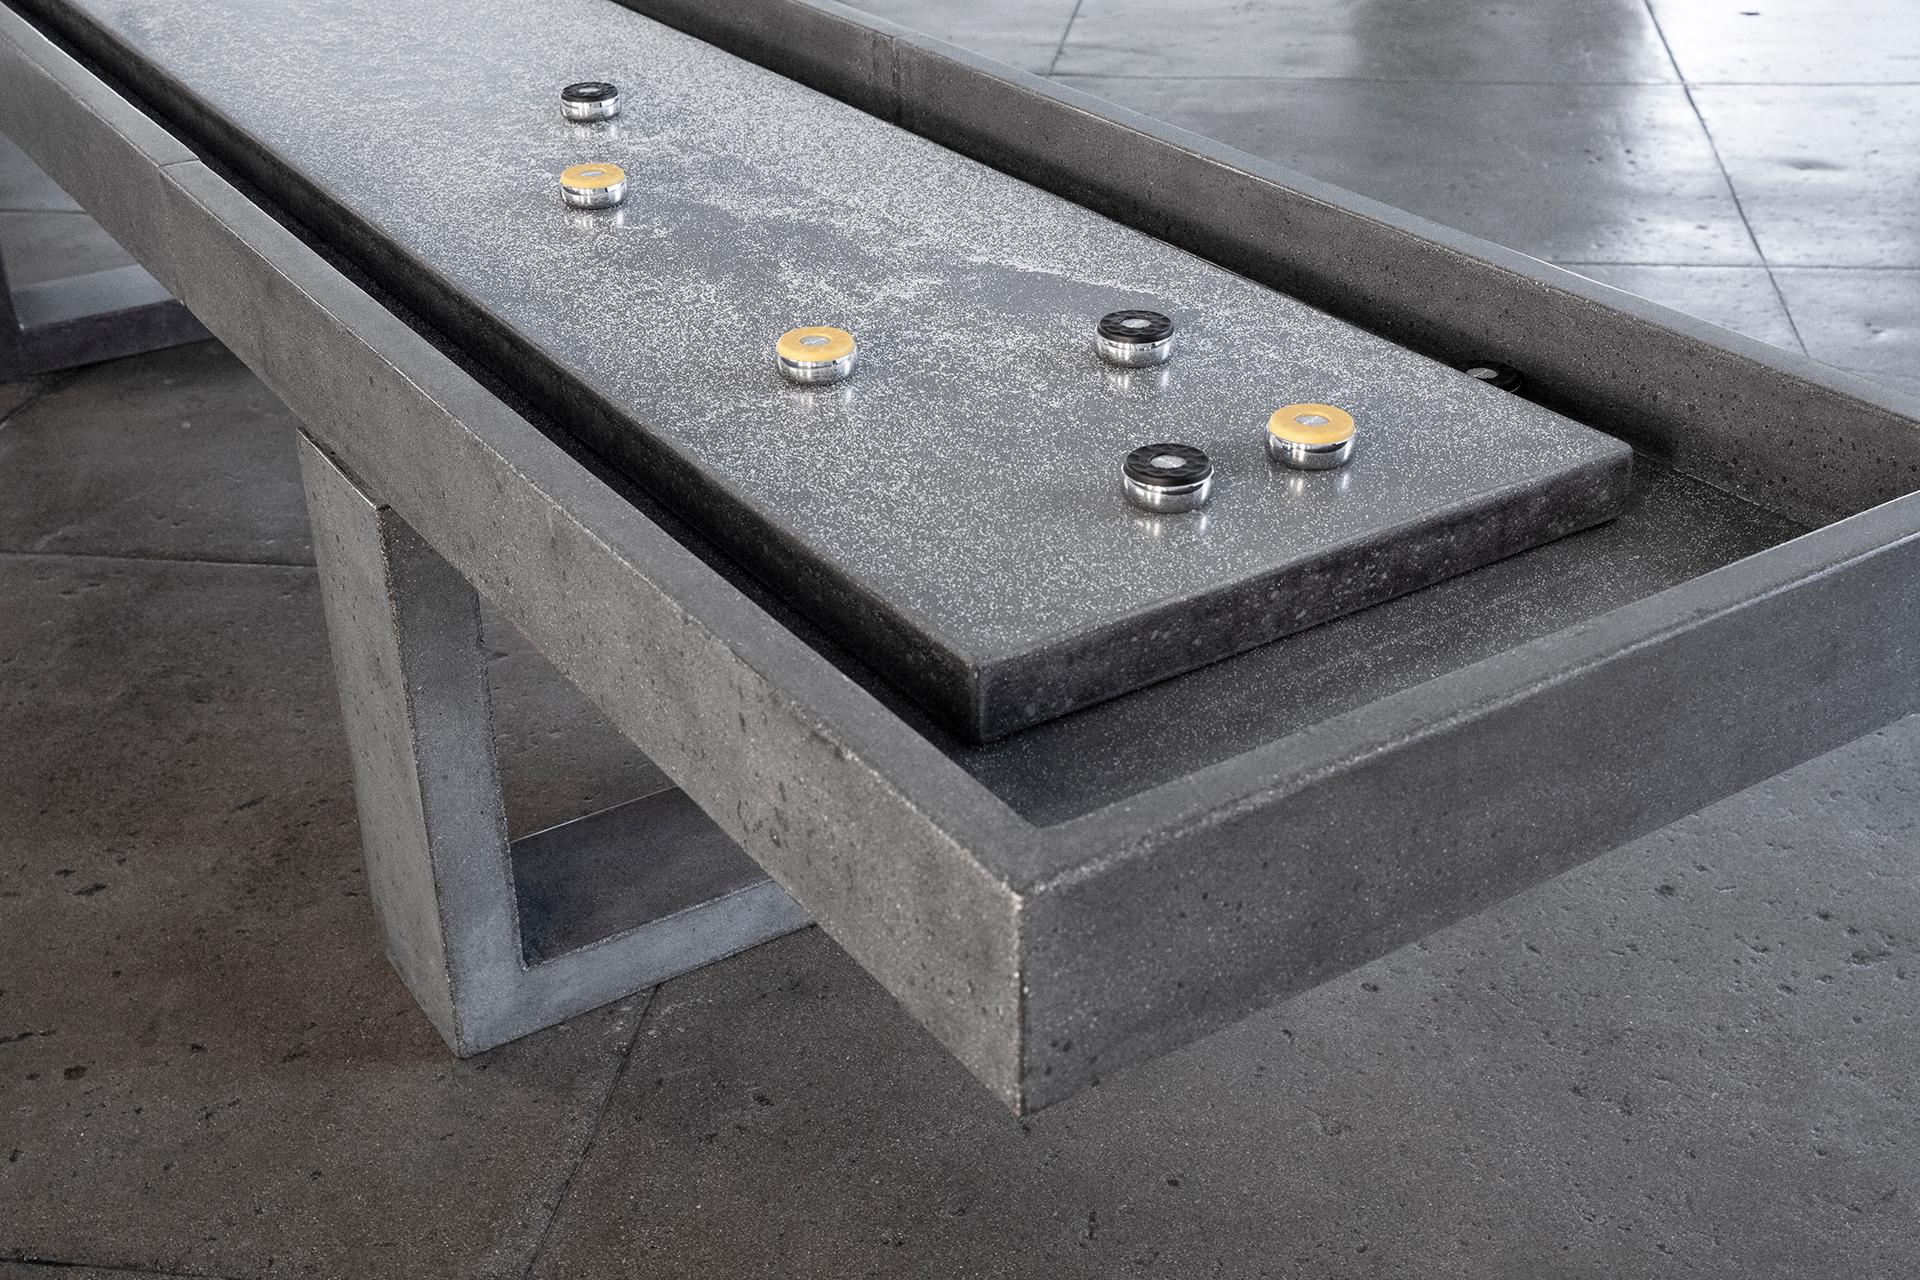 Der James de Wulf Shuffleboard-Tisch ist eine lebendige Ergänzung für jedes Spielzimmer. Der 9-Fuß-Tisch besteht aus mit Kohlefaser verstärktem Beton. Das sanfte Gleiten der Pucks über den fertigen Beton, gepaart mit dem brutalen Design des Tisches,